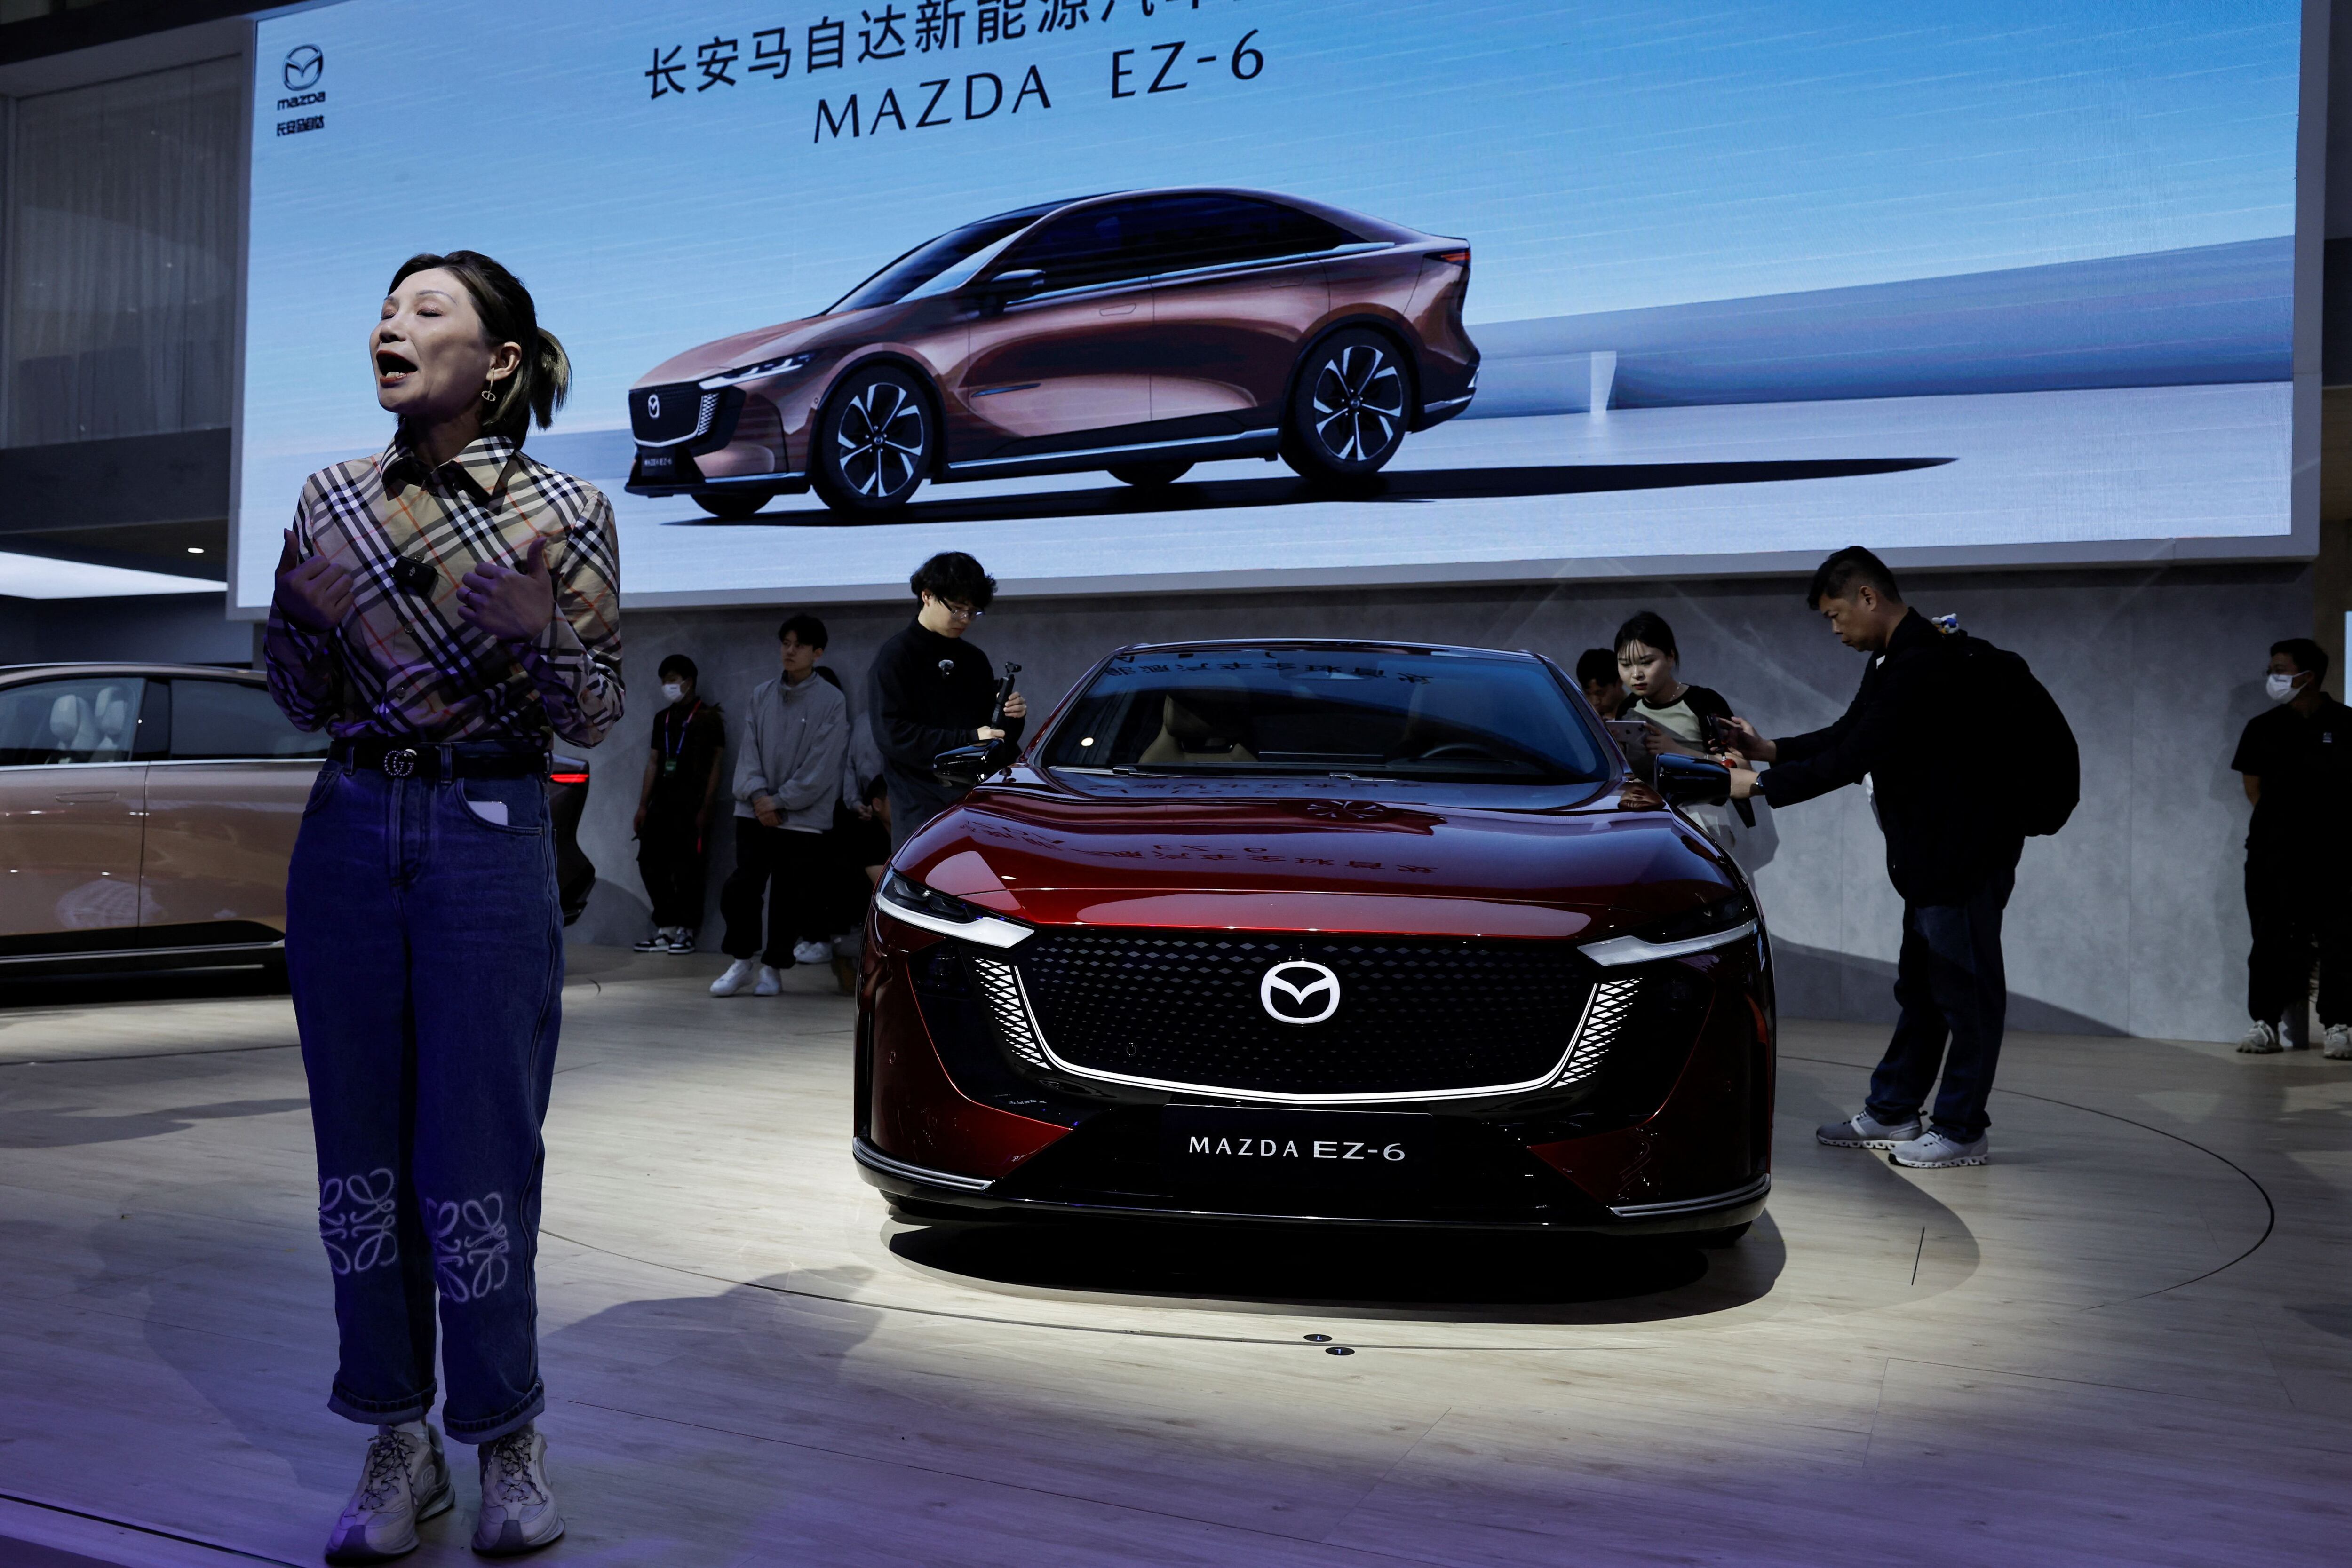 El Mazda EZ-6 fue mostrado en el evento internacional desarrollando en territorio asiático. (Foto: REUTERS/Tingshu Wang)